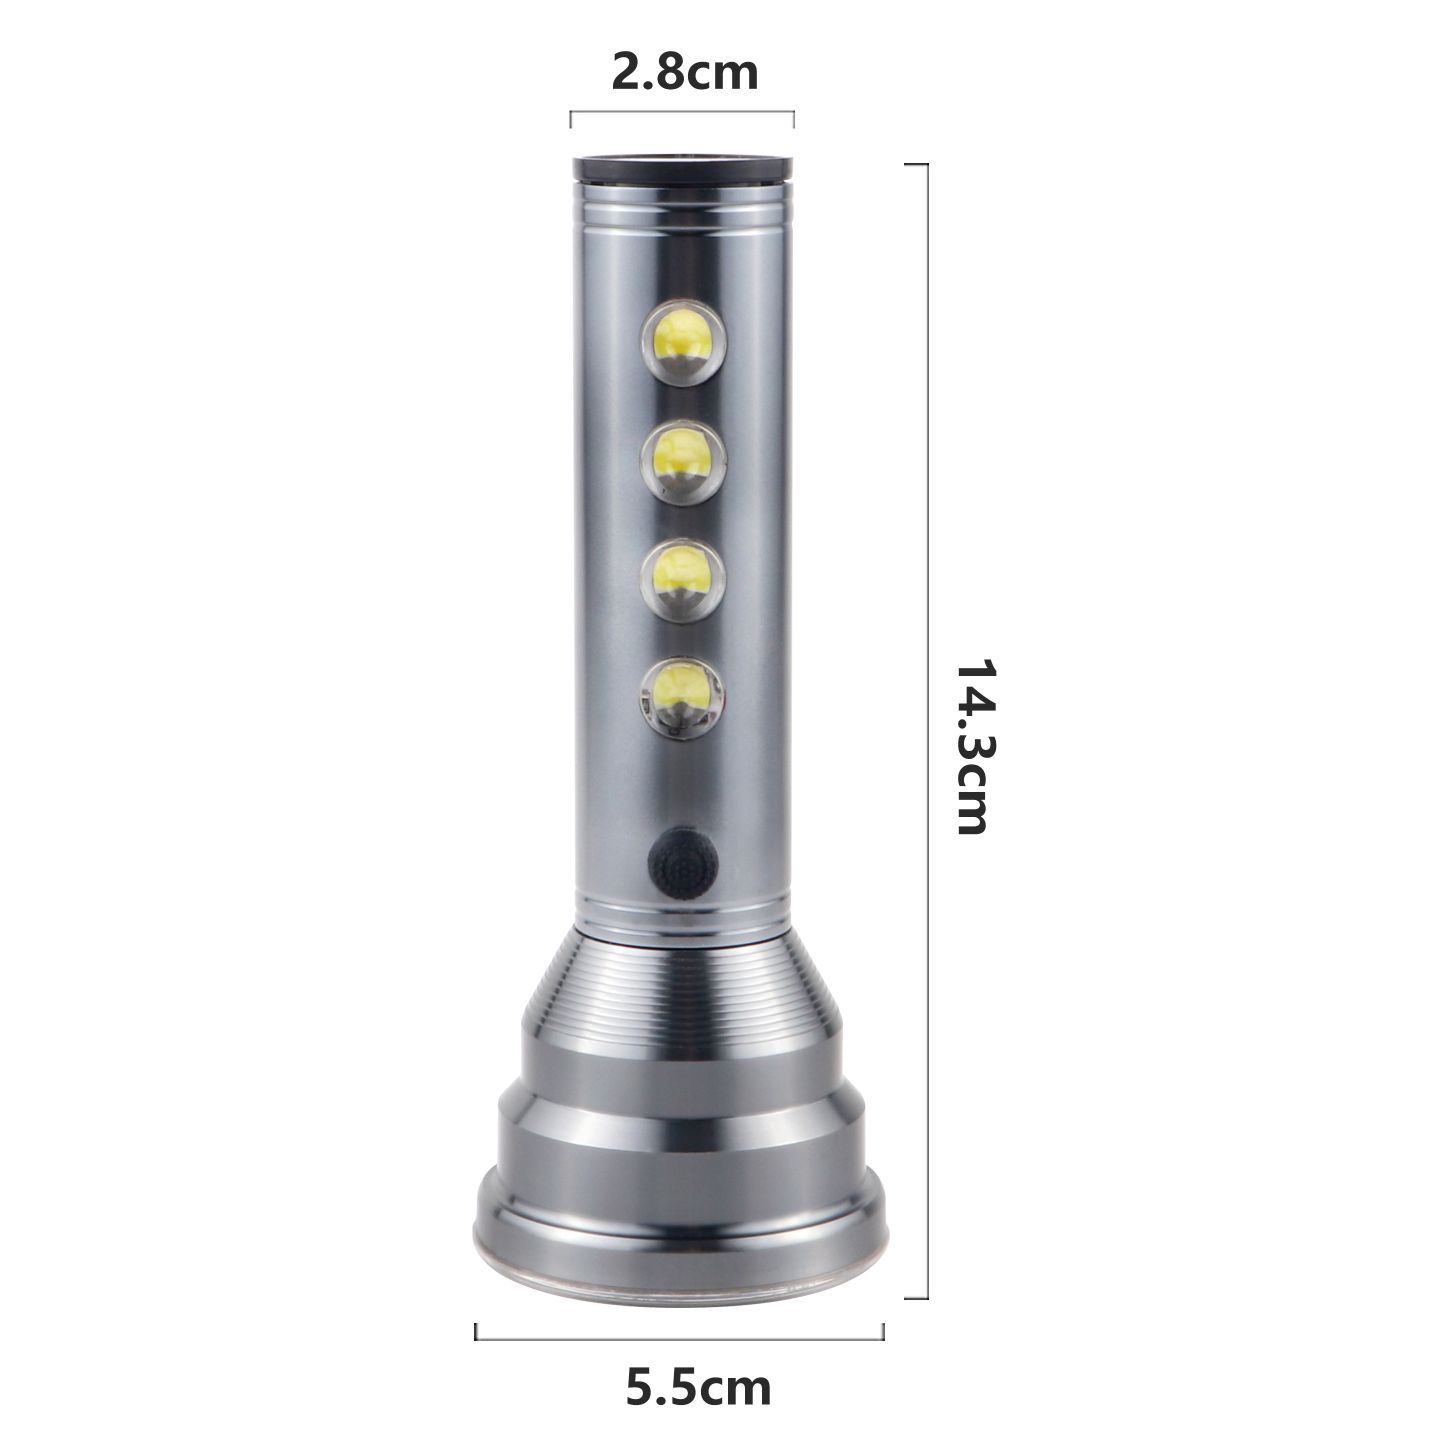 新款LED铝合金强光手电筒 户外巡逻家用便携多功能强光照明手电筒XJ-014详情图4